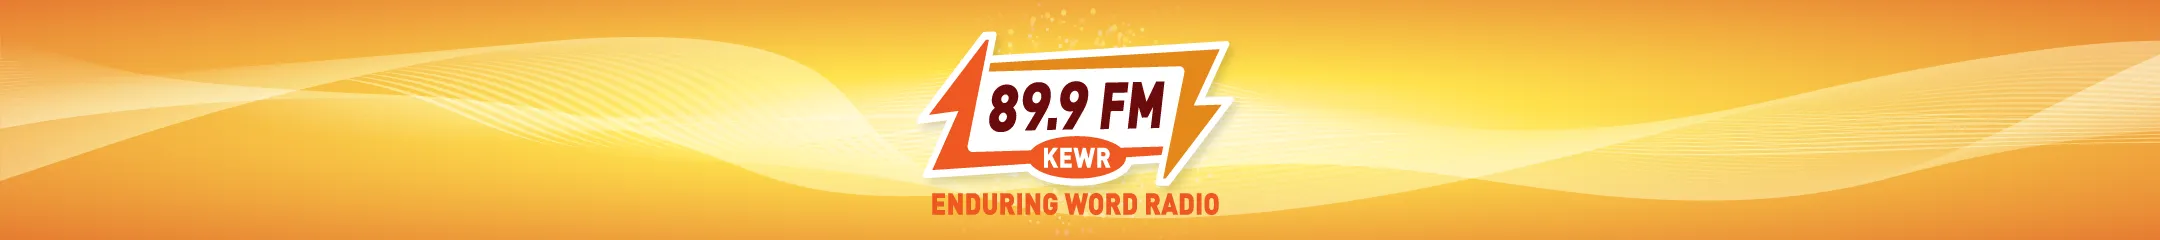 KEWR 89.9 FM logo